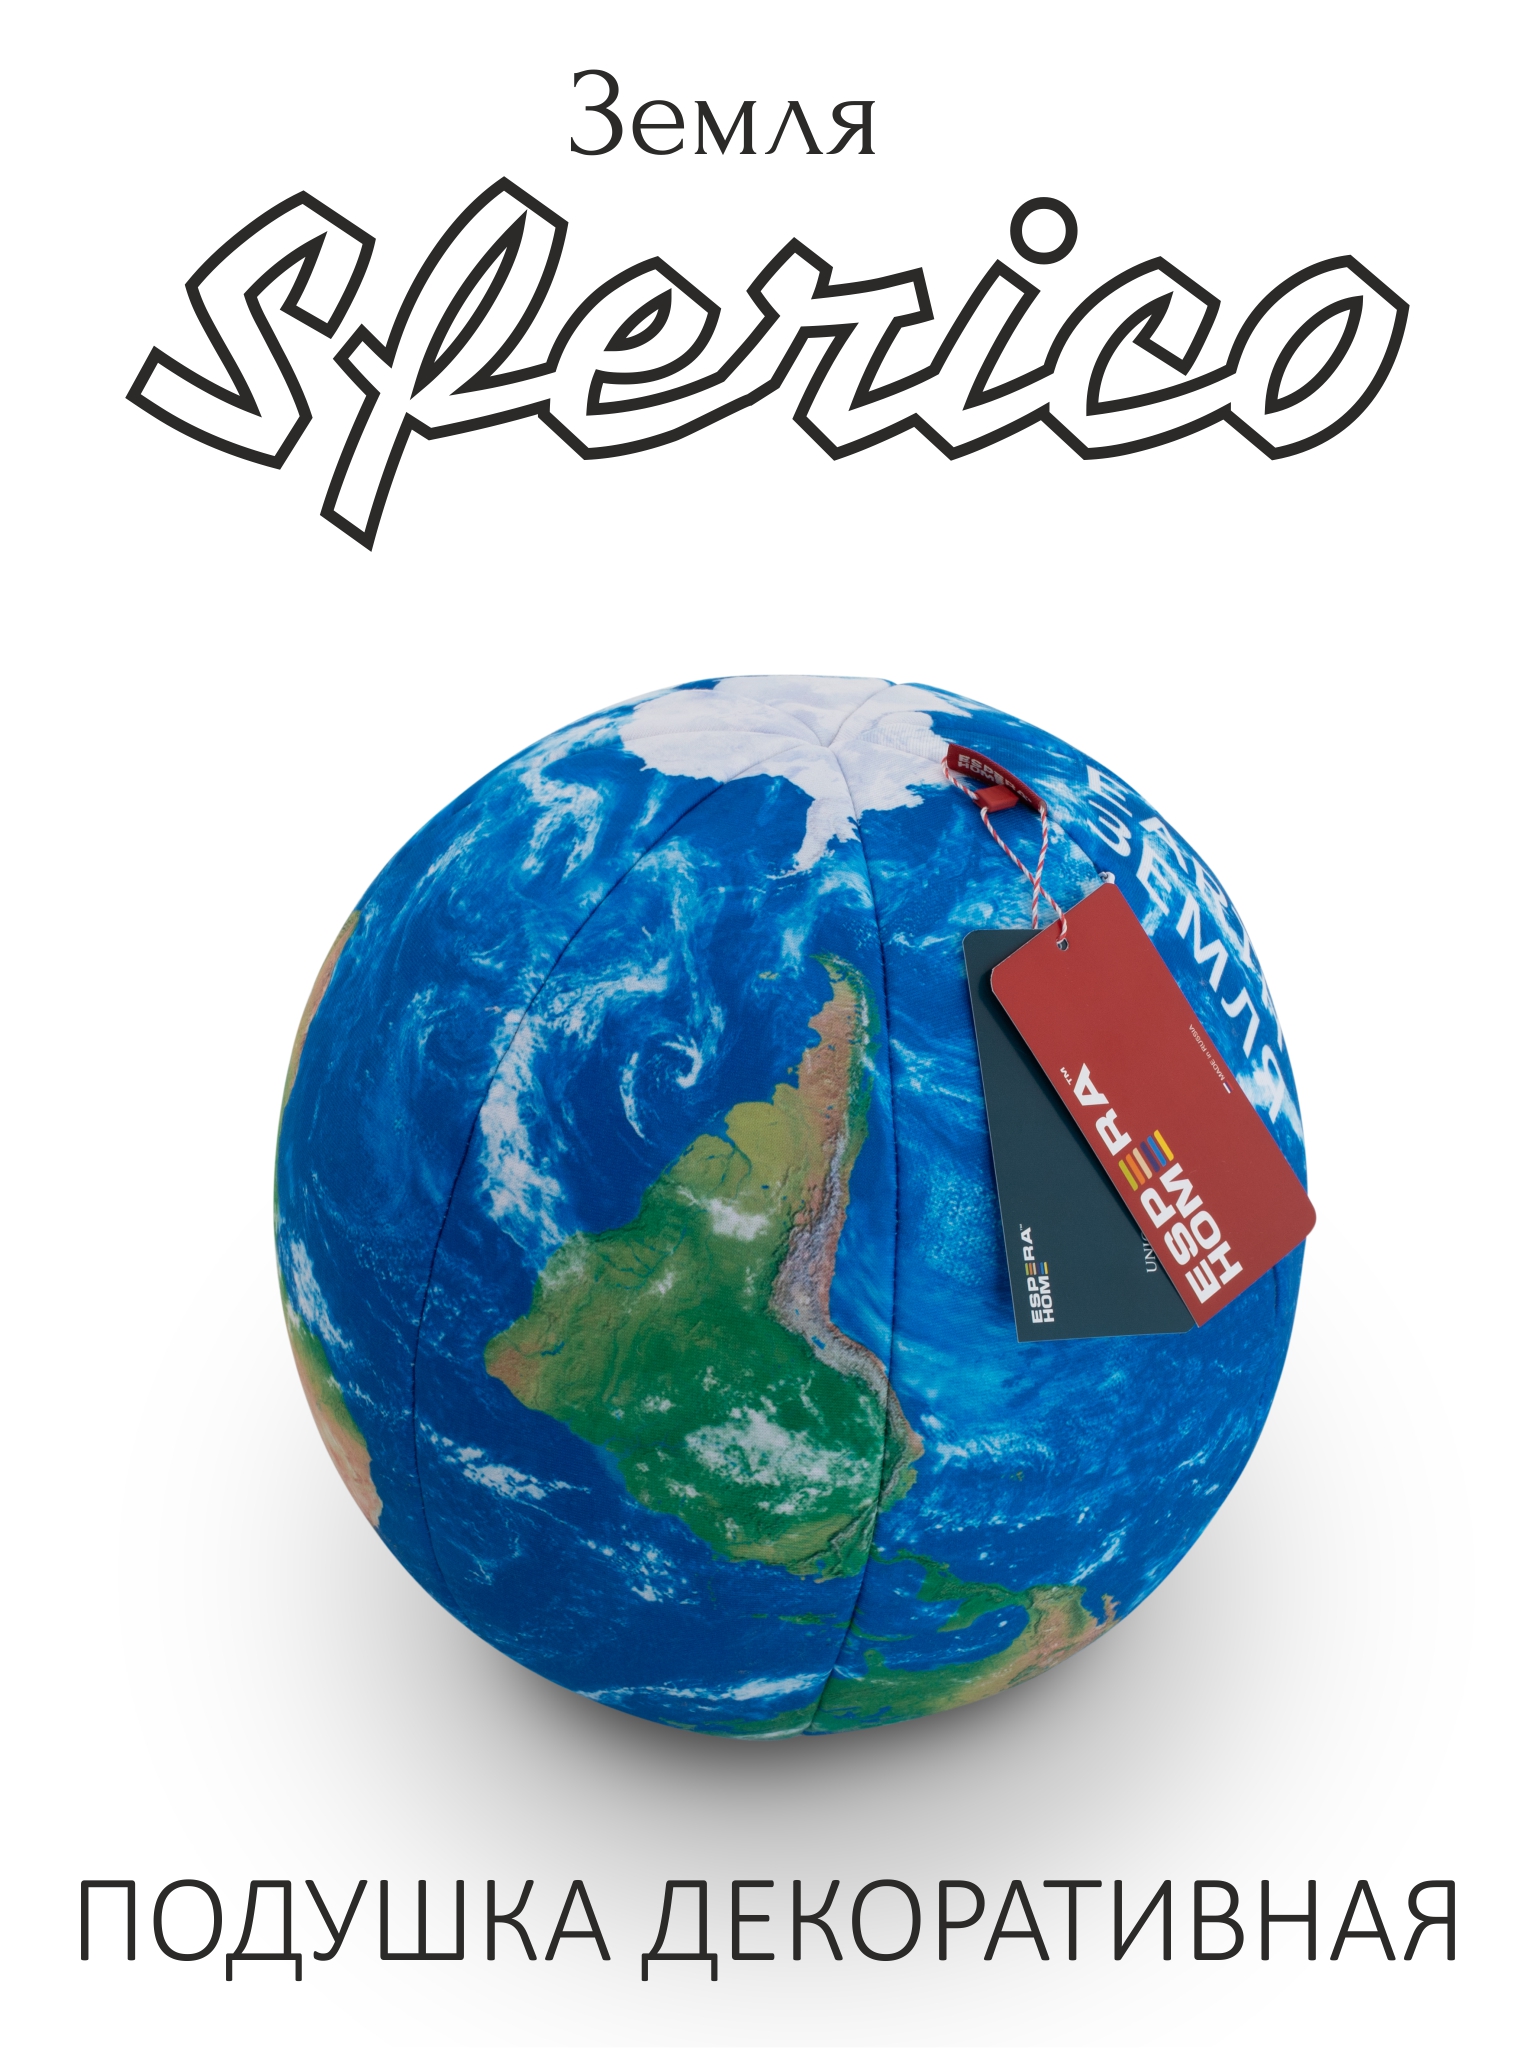 Декоративная подушка-игрушка шар • Sferico / Сферико • Земля (серия Планеты)